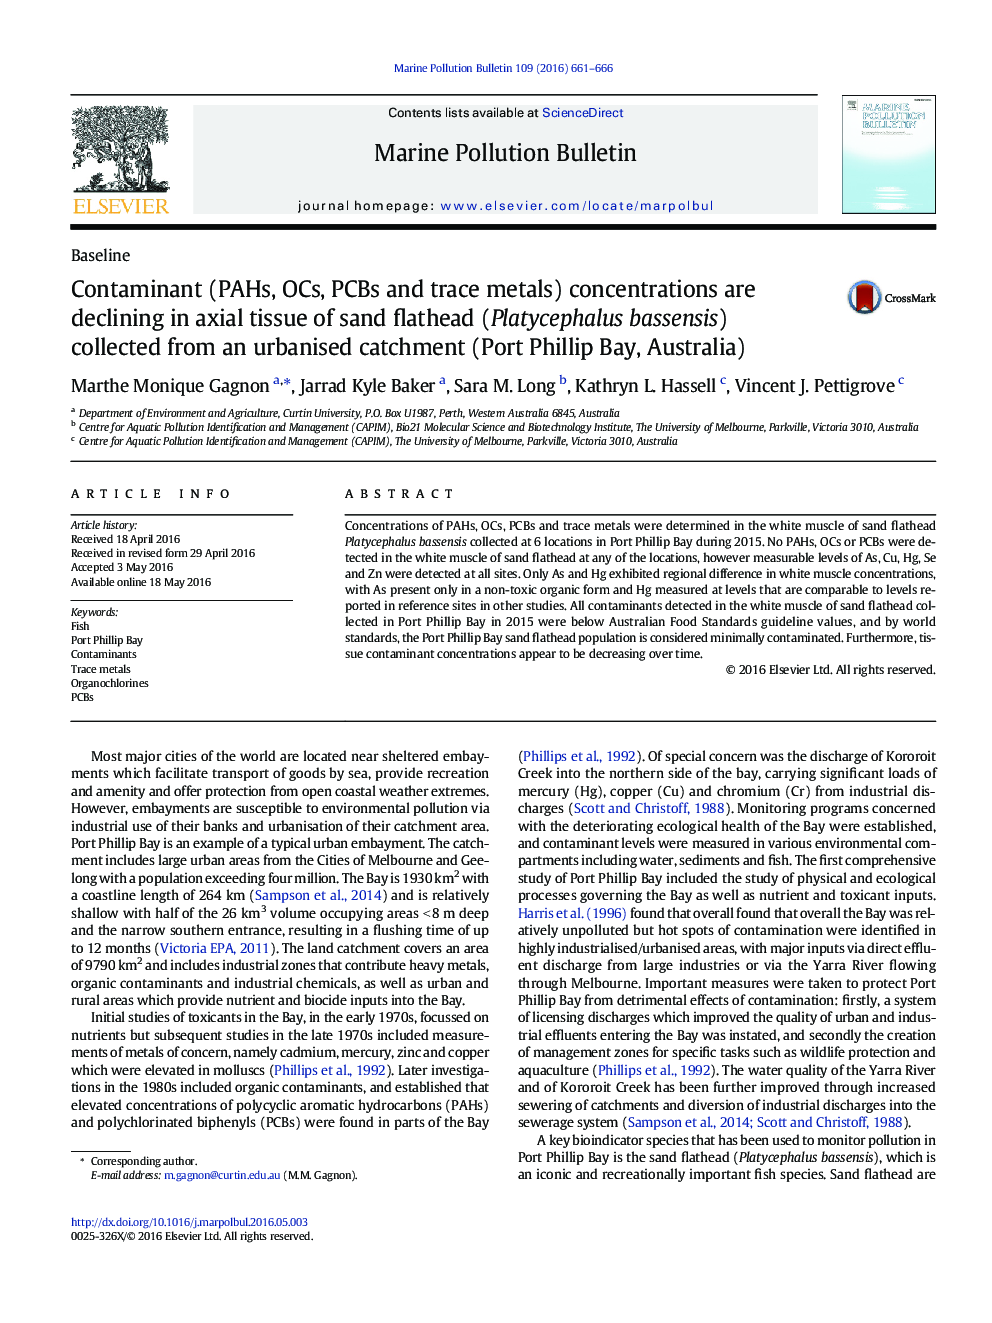 غلظت آلاینده (PAHs ،OCS، PCBs و ردیابی فلزات) رو به کاهش در بافت محوری flathead شن و ماسه (bassensis Platycephalus) جمع آوری شده از حوضه آبریز شهری (بندر خلیج فیلیپ، استرالیا)